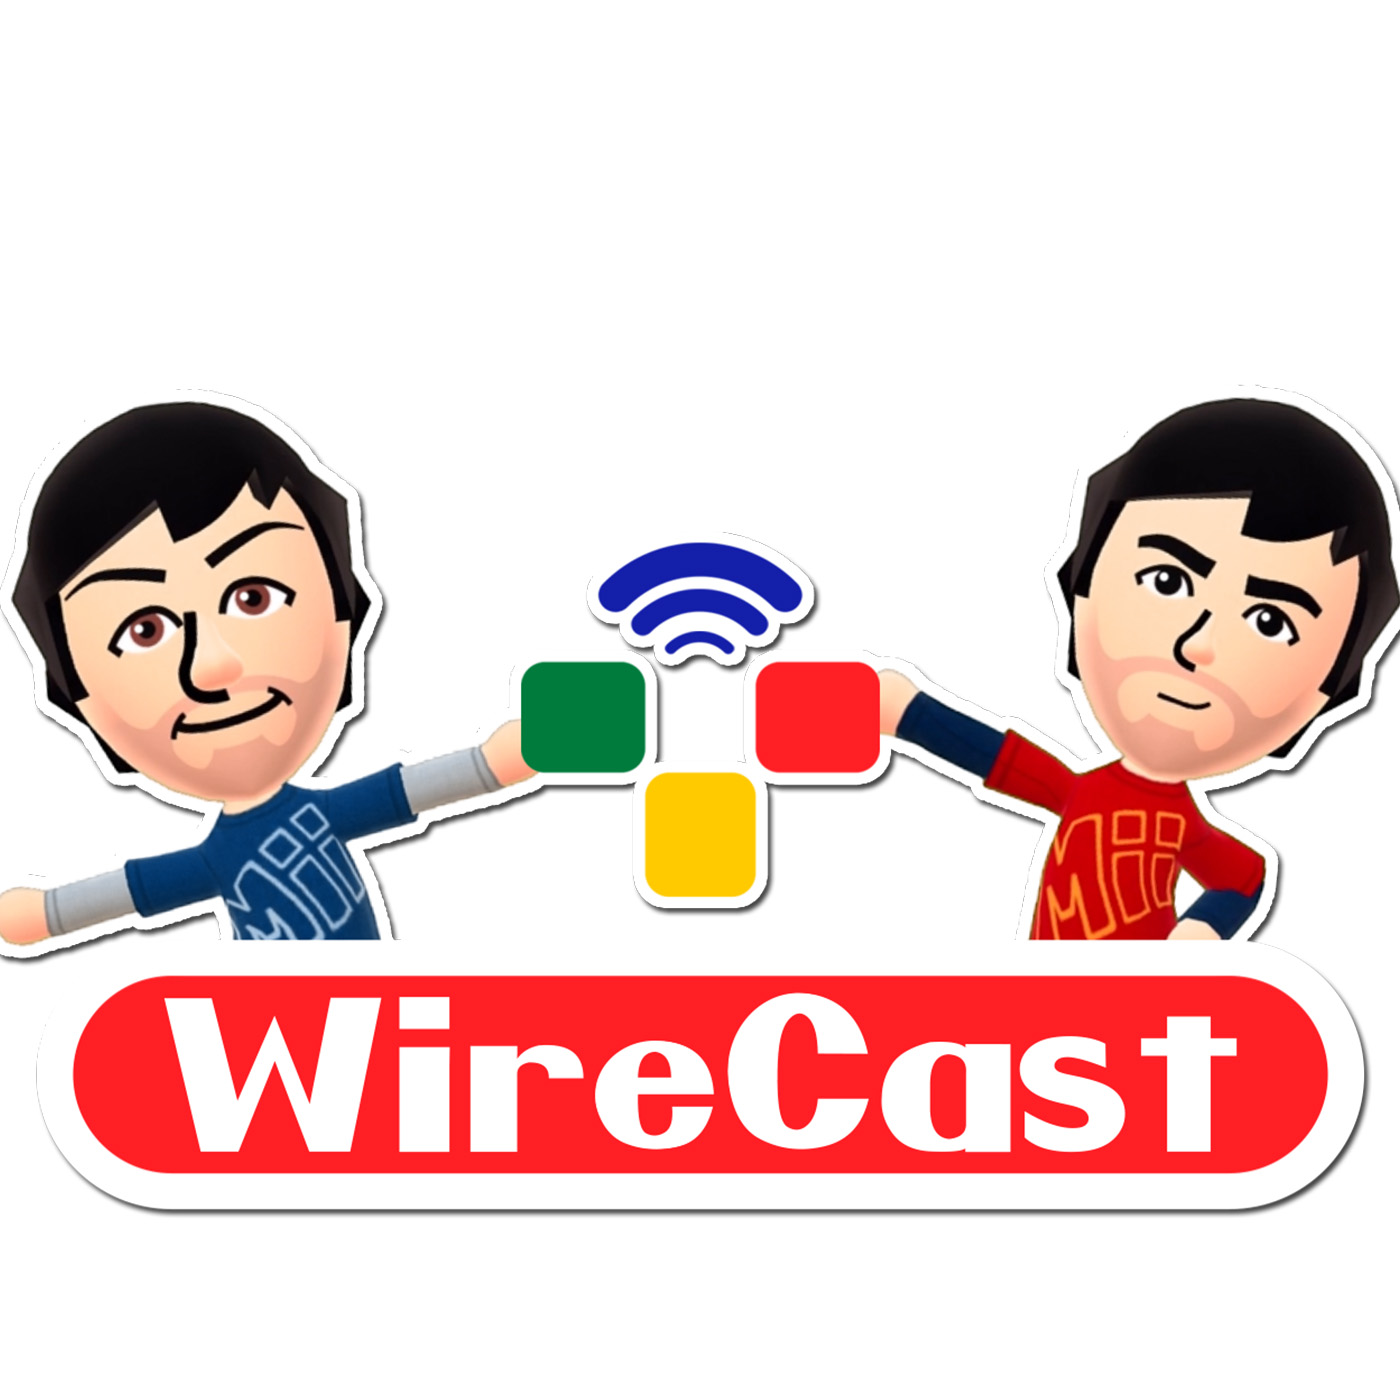 The Nintendo WireCast